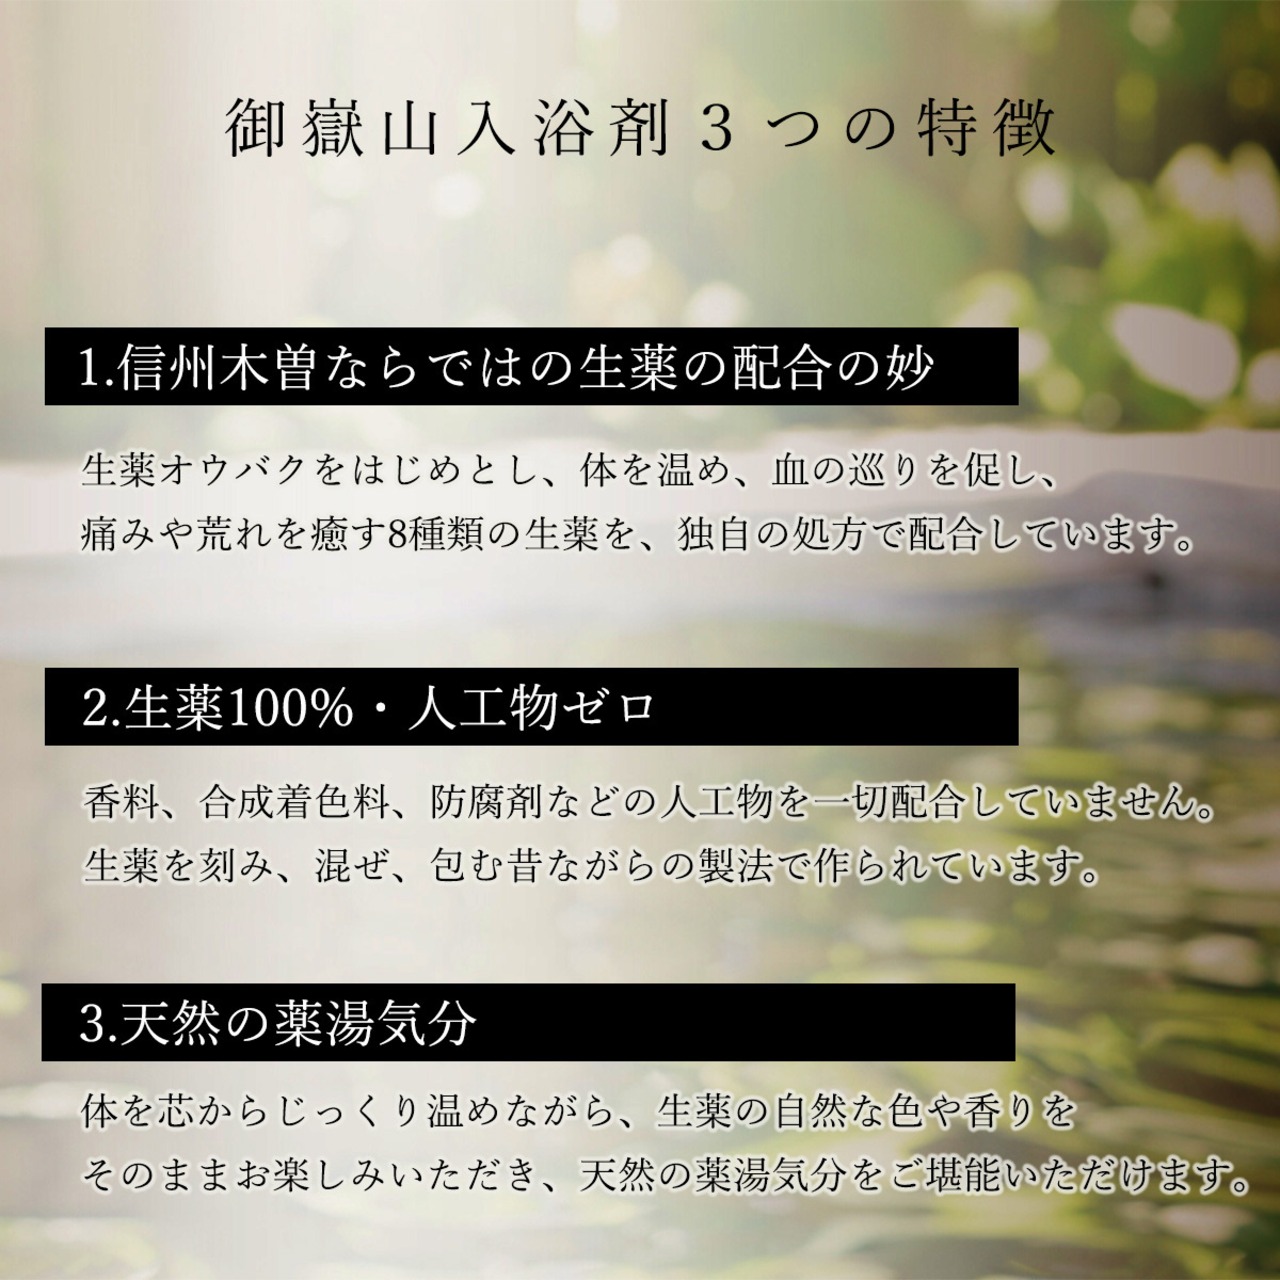 【薬湯】 木曽 御嶽山 入浴剤 60包 (生薬100%)